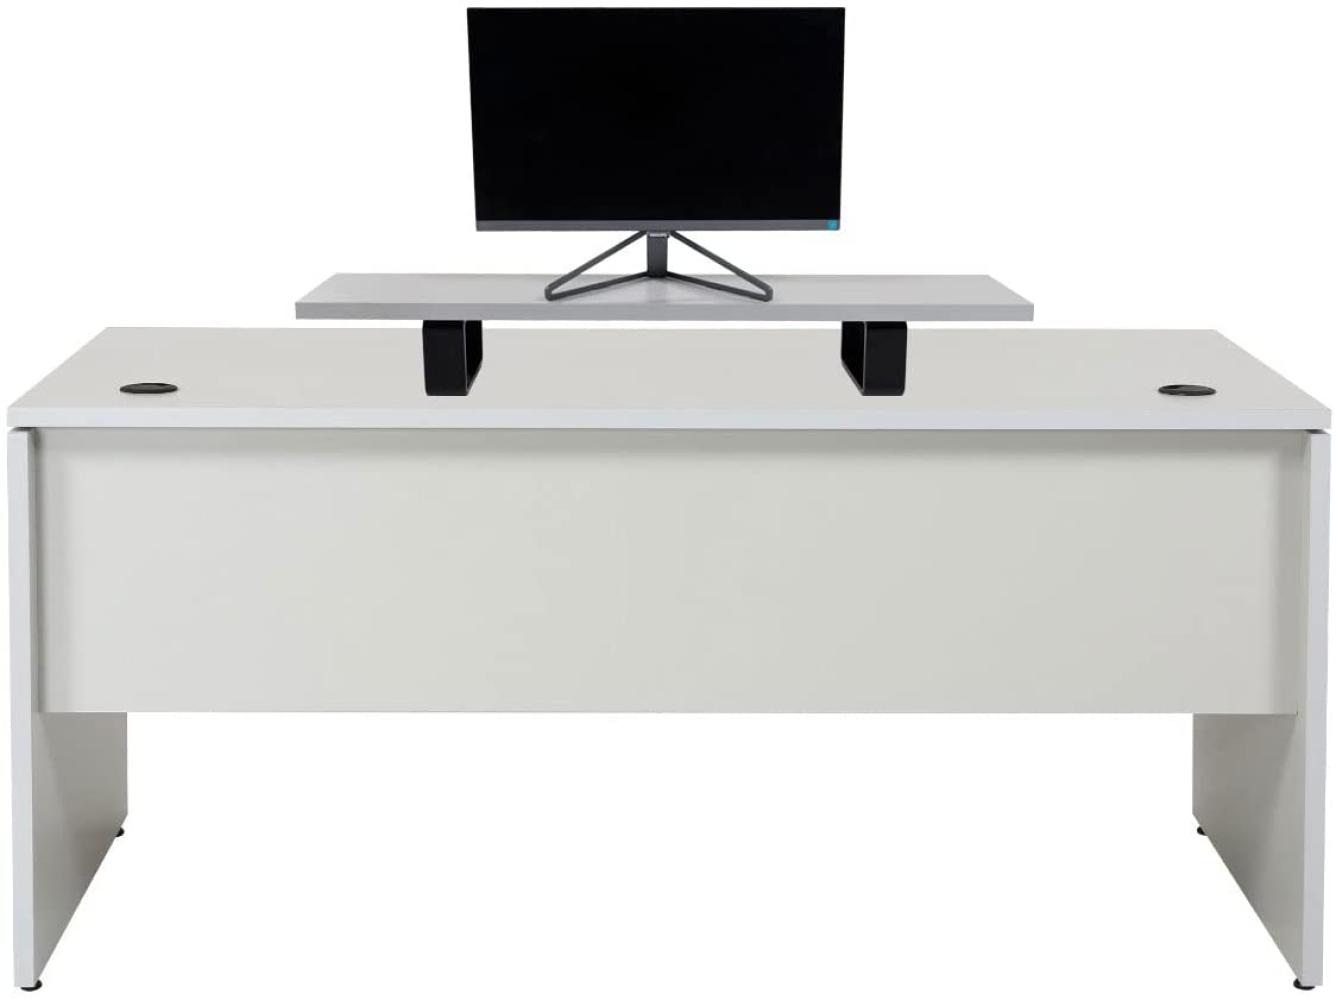 Furni24 Schreibtisch fürs Arbeitszimmer und Home Office - Großer laminierter Computertisch aus Holz, 2 Kabeldurchlässe, Bodengleiter (Grau, inkl. Monitorständer, 160x80x75 cm) Bild 1